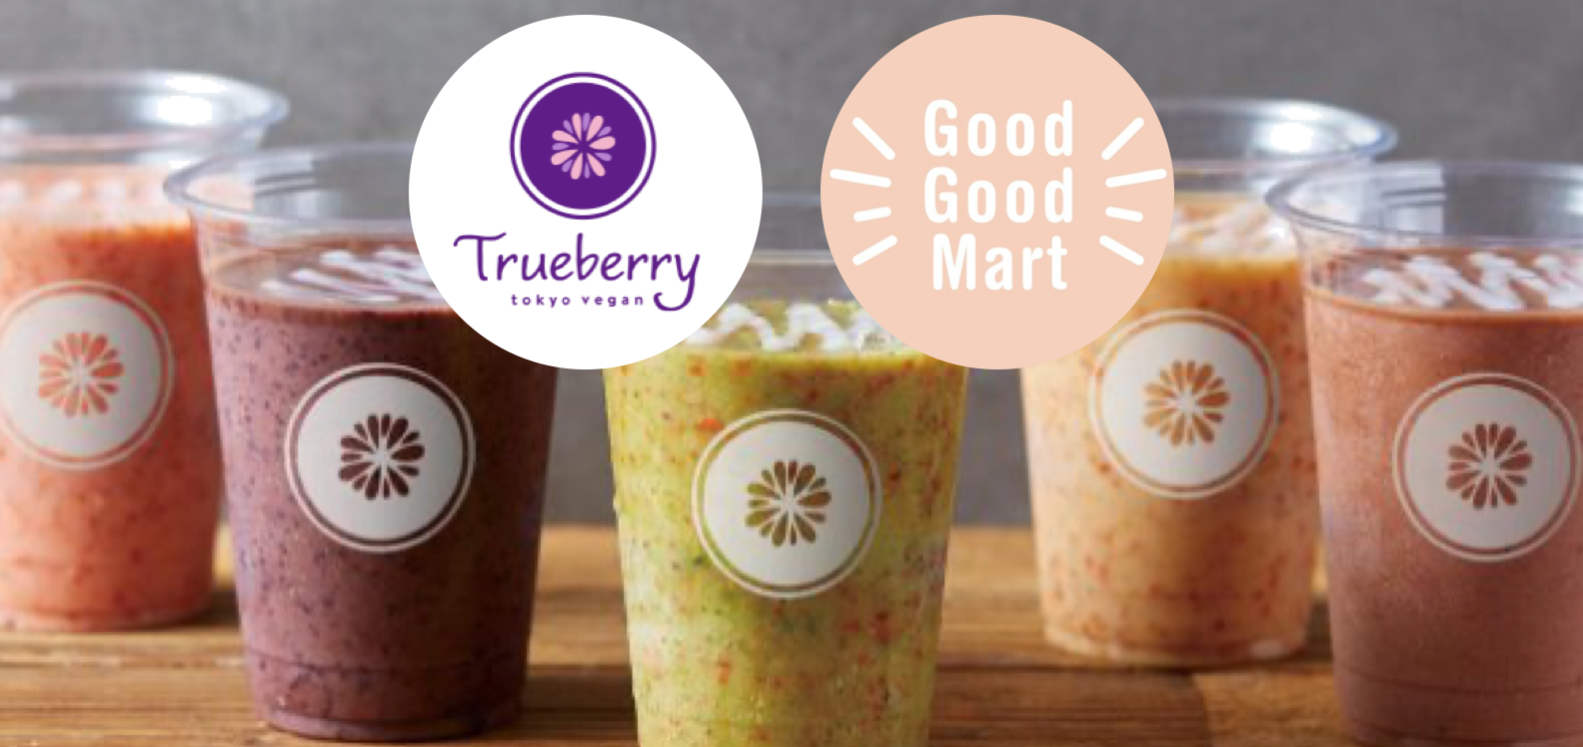 ソーシャルグッドな商品のマーケット「Good Good Mart」とヴィーガン・カフェ「Trueberry」が提携、オンラインで注文した商品の店頭ピックアップが可能にのサブ画像1